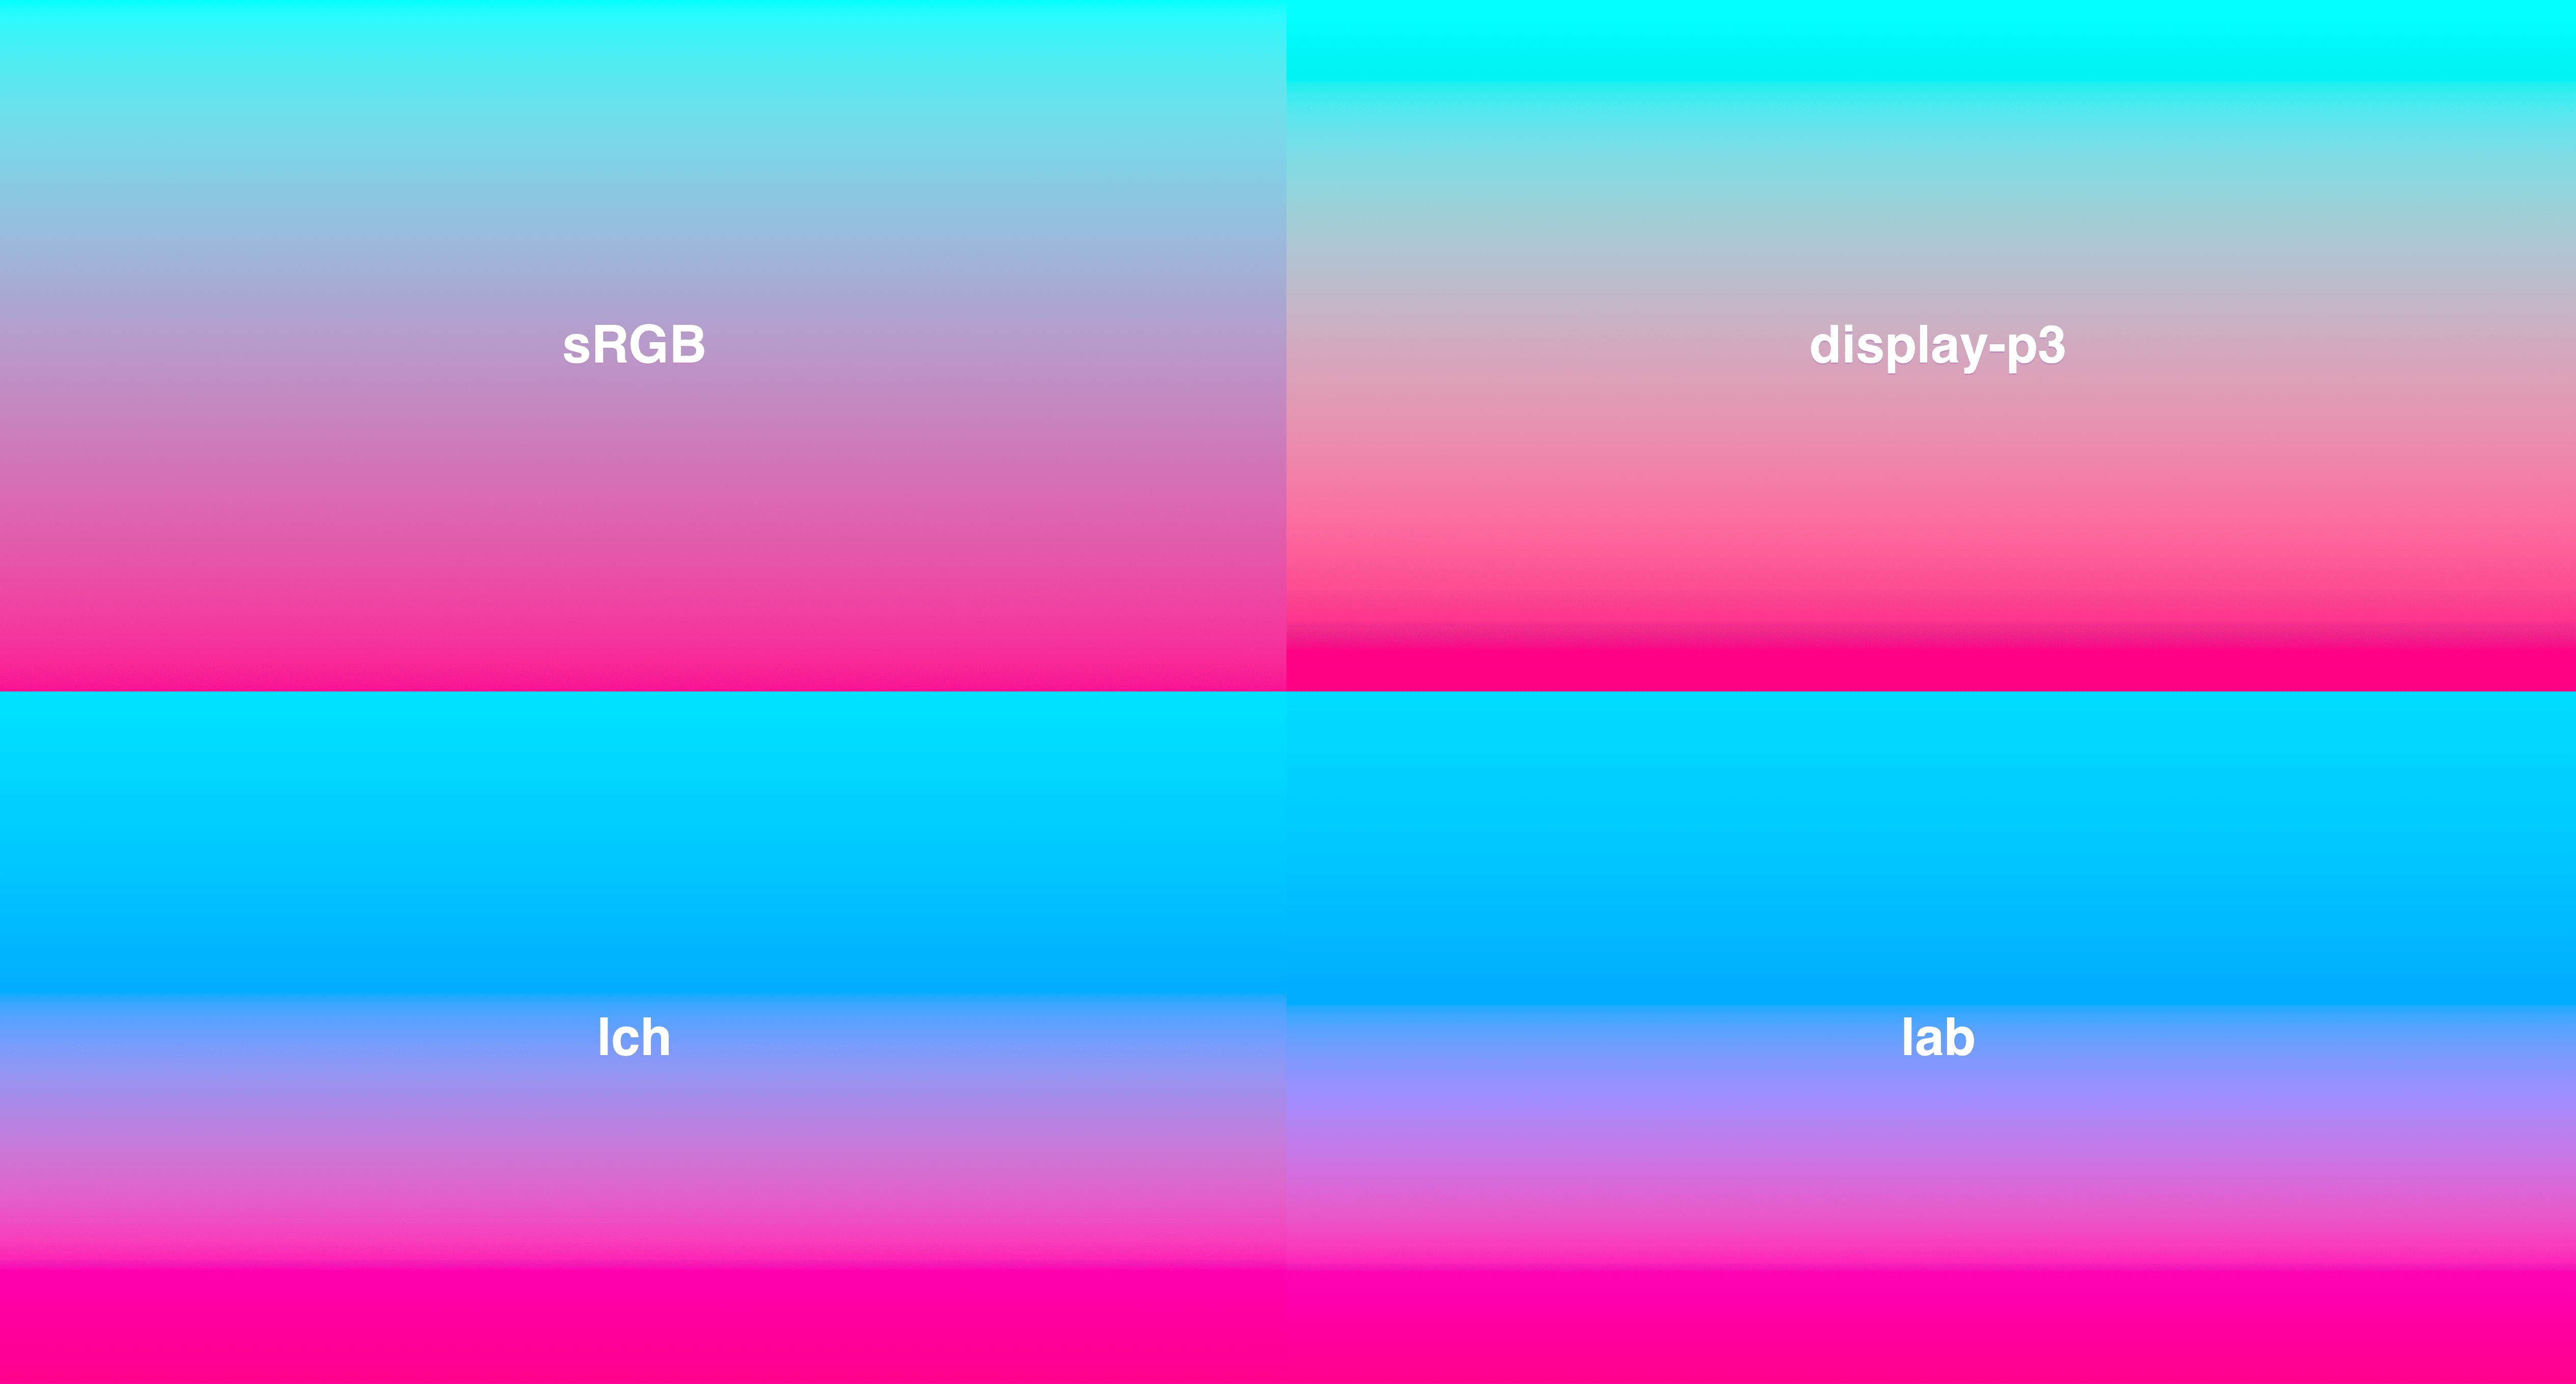 4 градиента в сетке, от голубого до темно-розового. LCH и LAB имеют более равномерную яркость, тогда как sRGB немного обесцвечивается в середине.